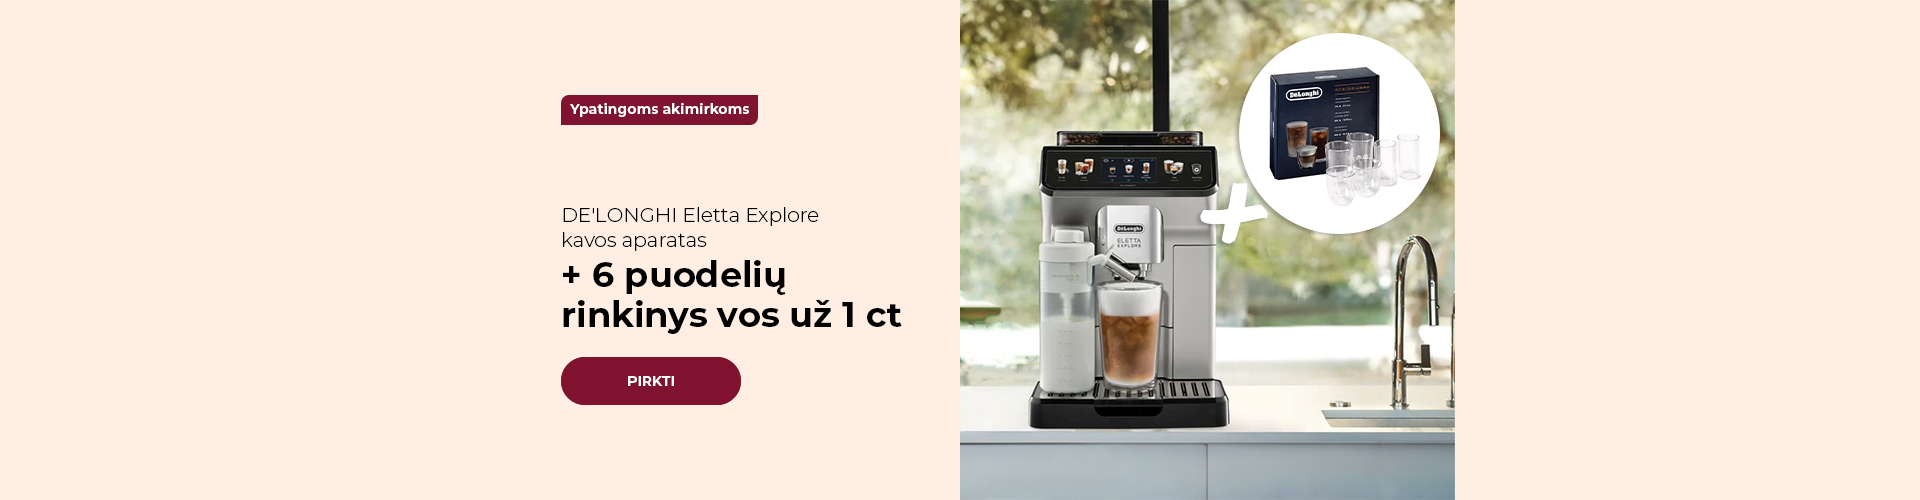 DE'LONGHI Eletta Explore kavos aparatas + 6 puodelių rinkinys vos už 1 ct